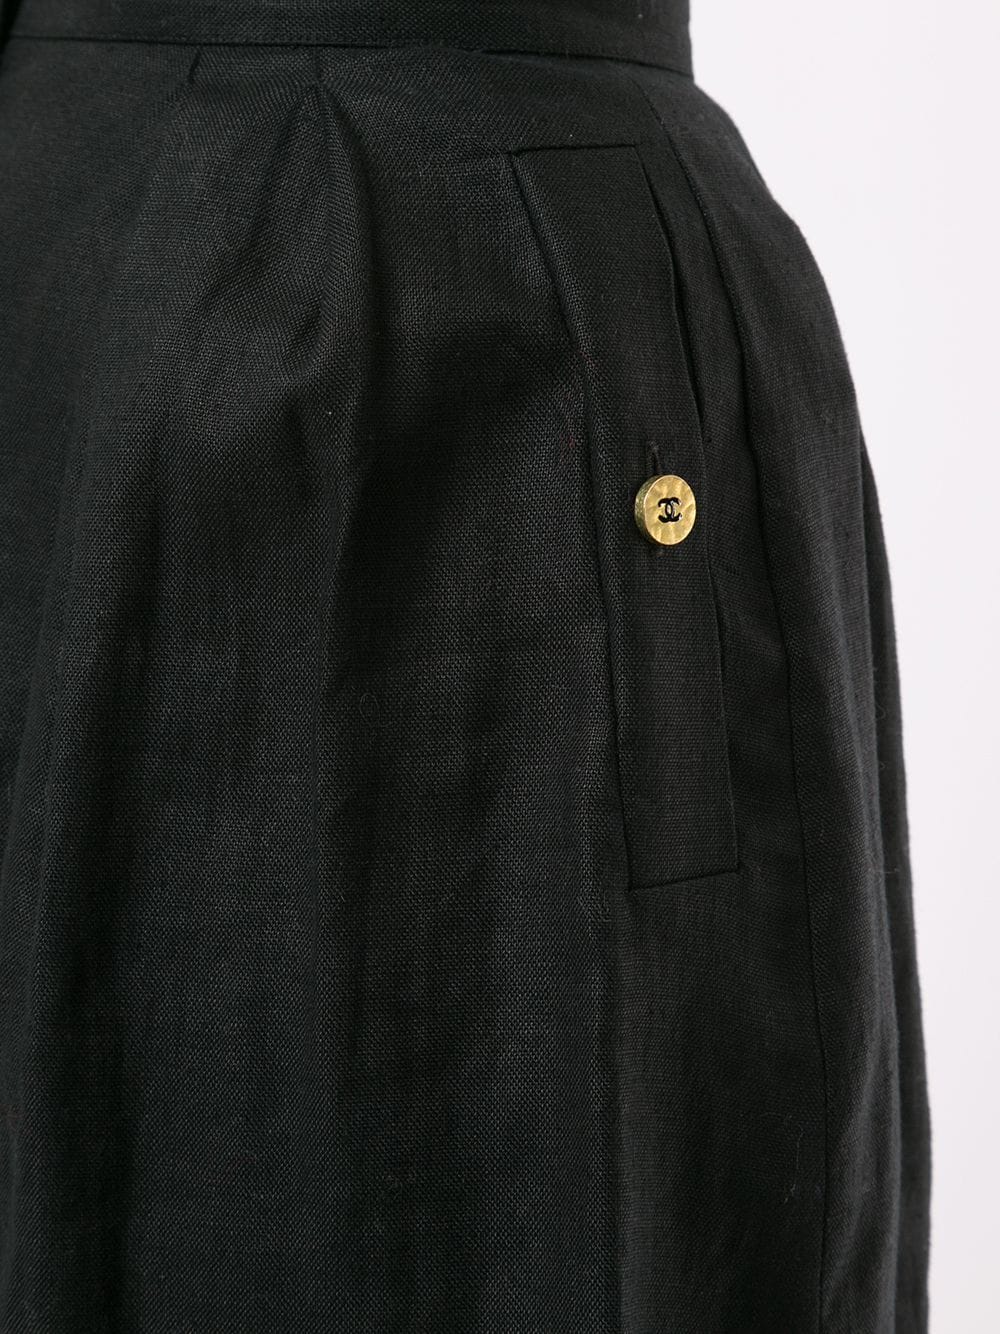 фото Chanel pre-owned шорты с логотипом cc на пуговице